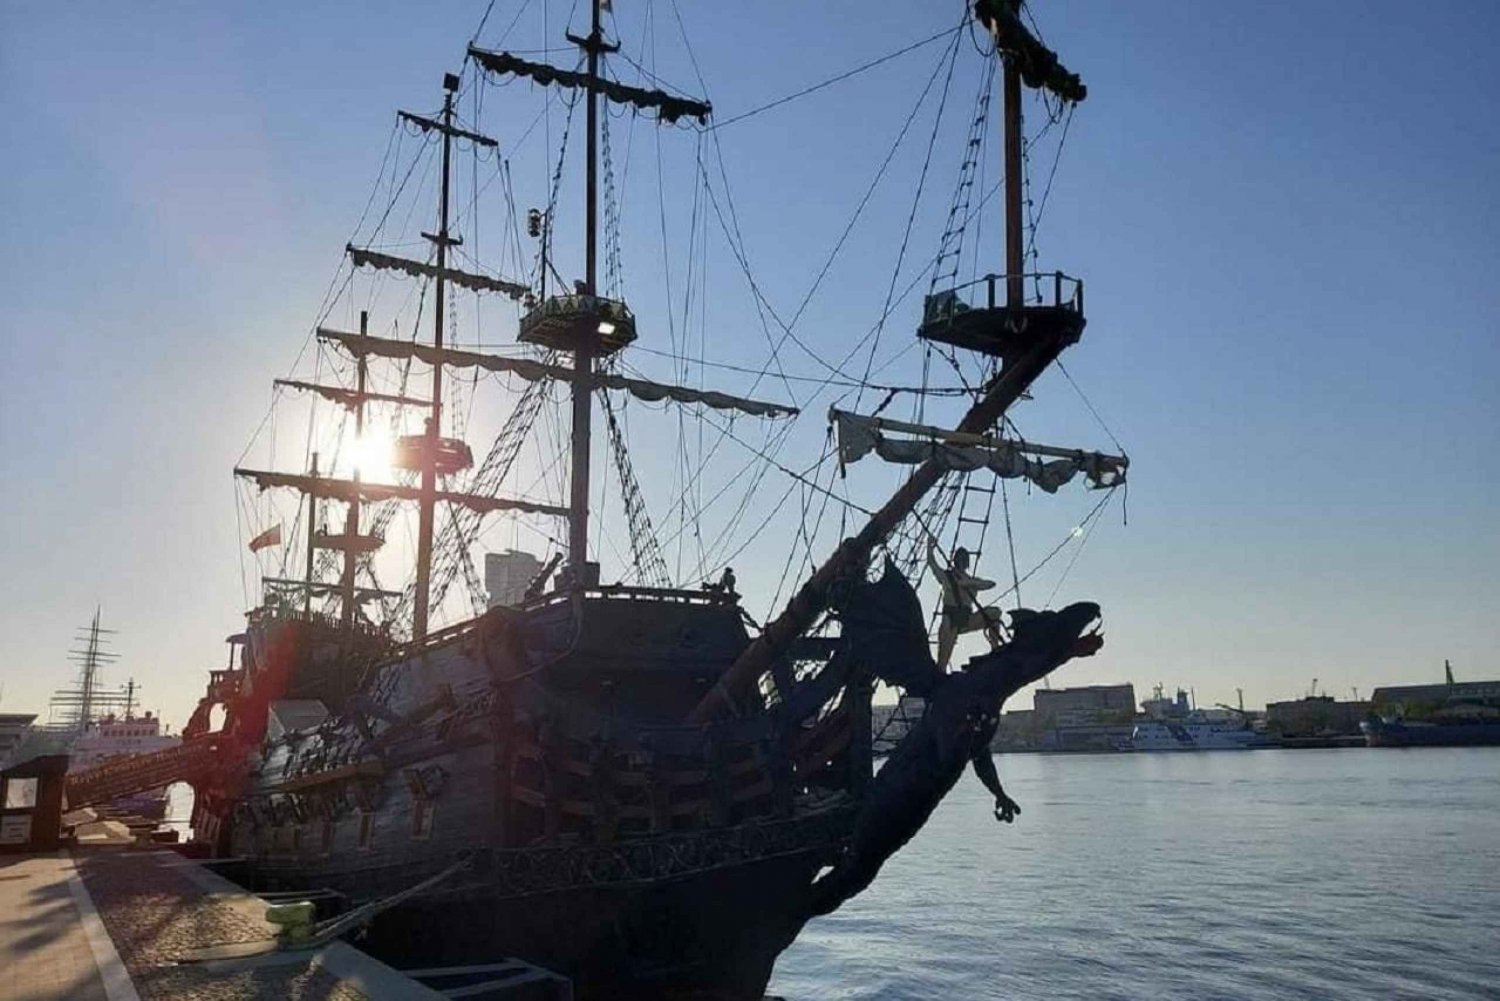 Gdynia: Visita al puerto de Gdynia en barco galeón